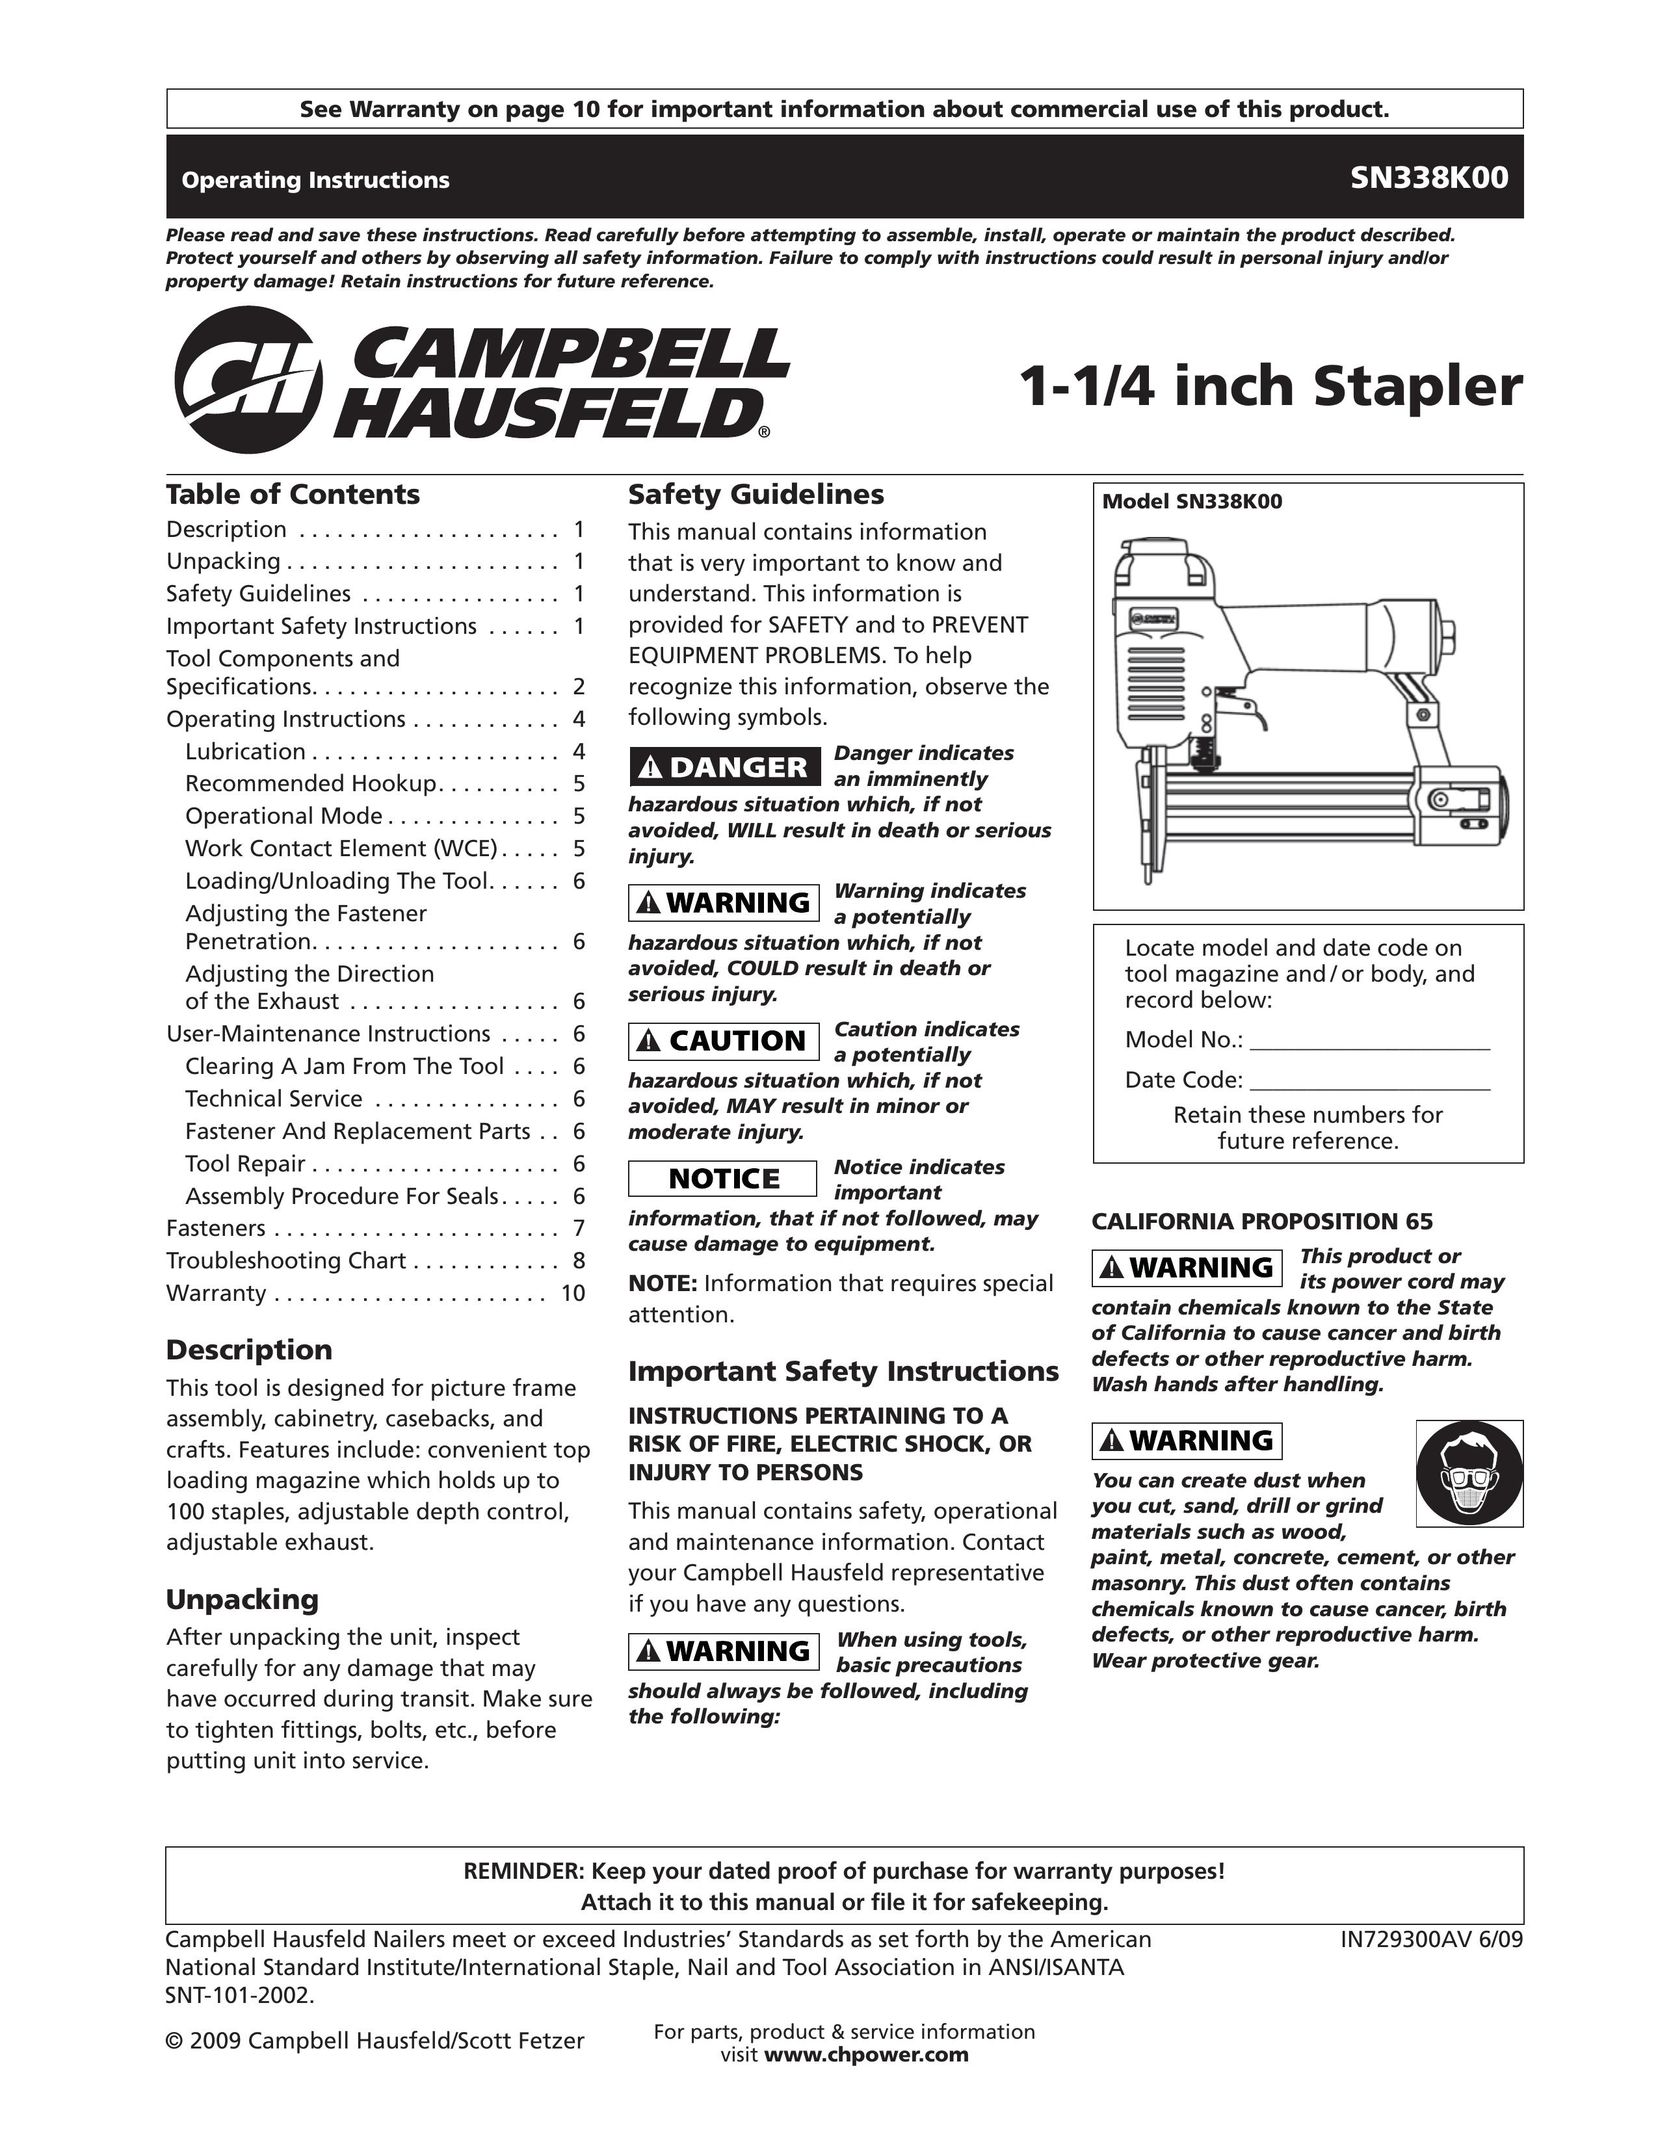 Campbell Hausfeld IN729300AV Staple Gun User Manual